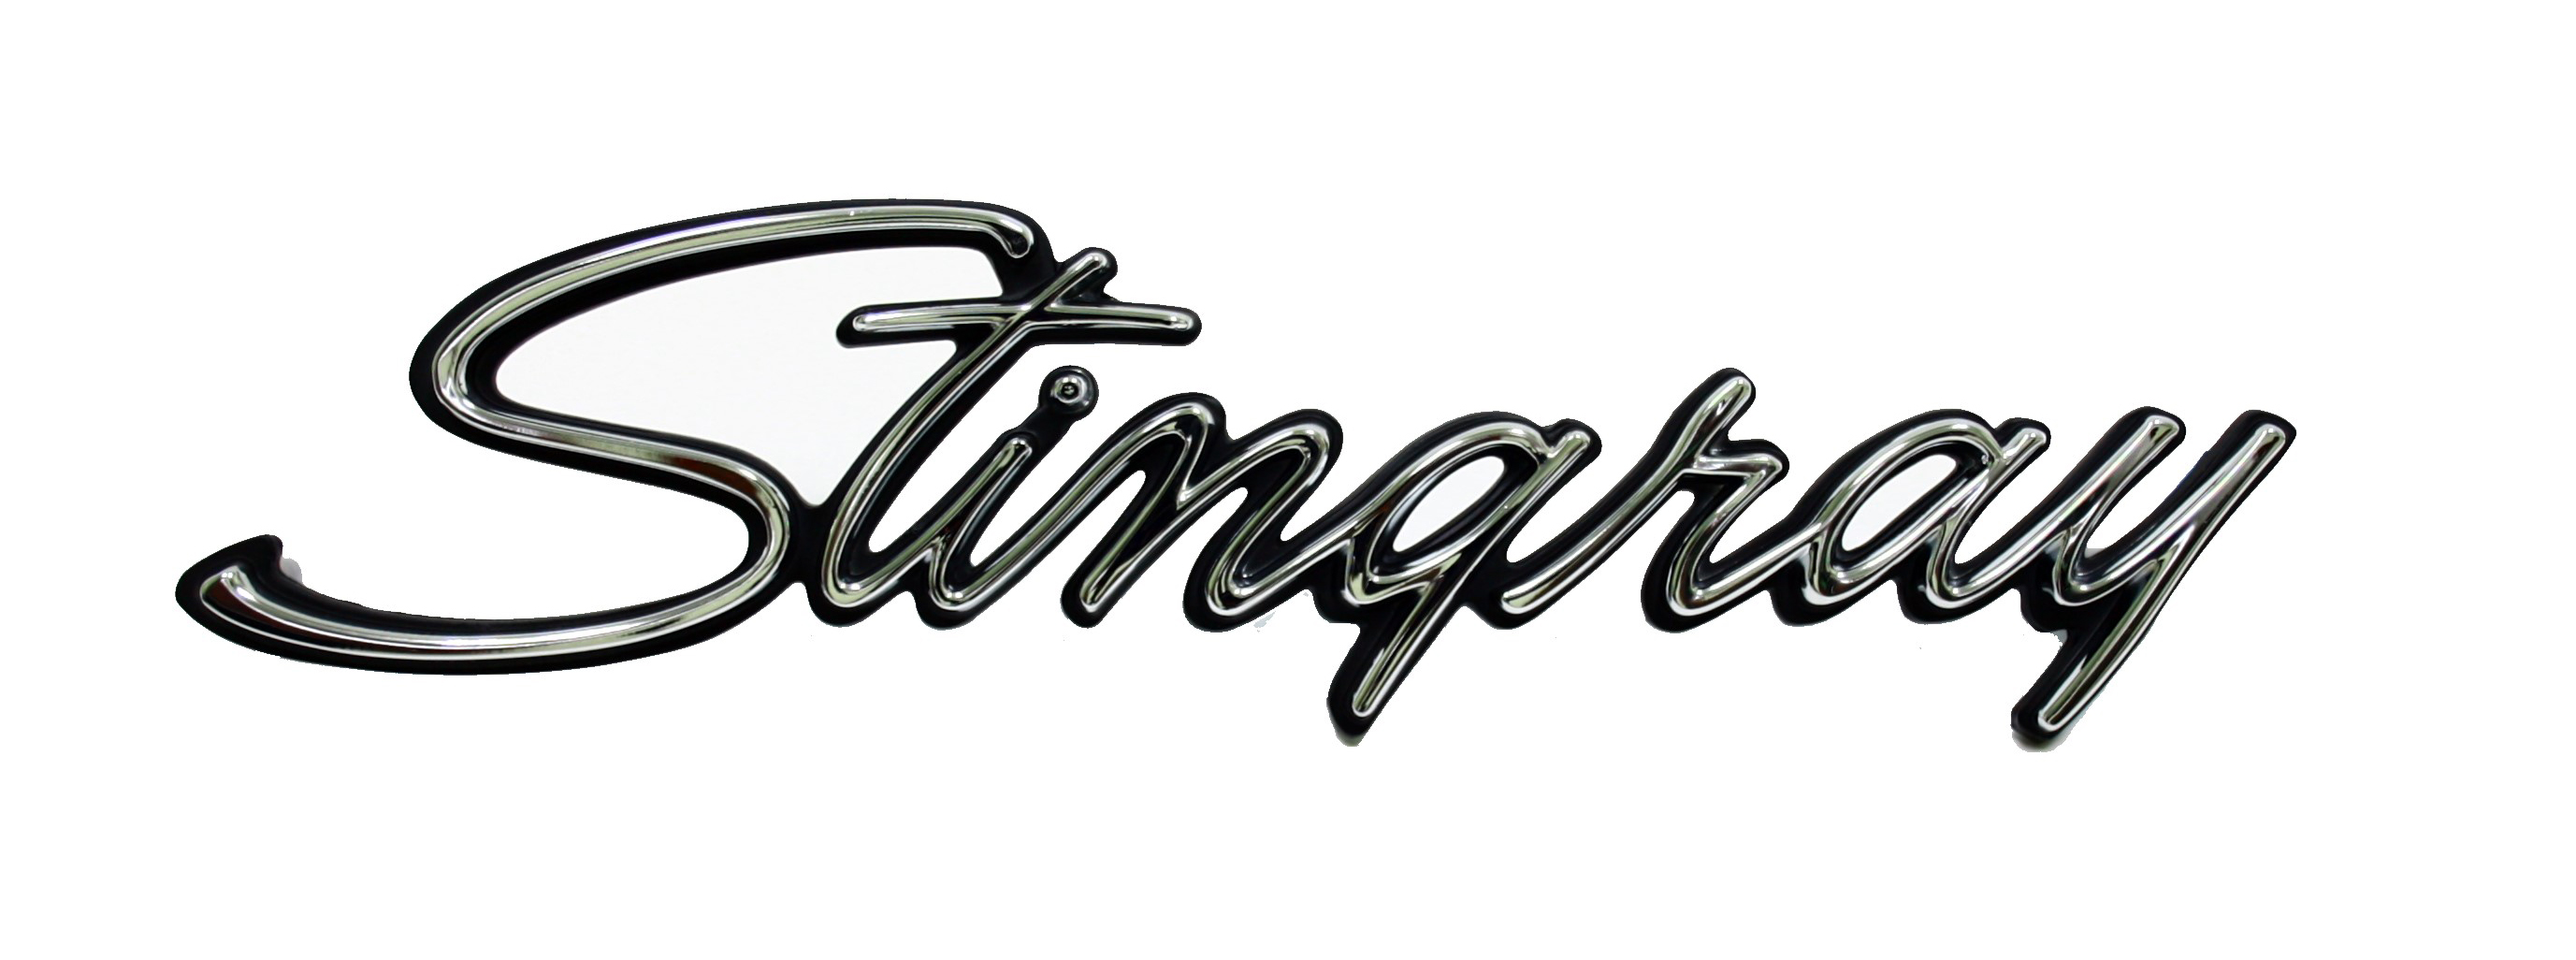 1974-1976 Corvette Side Emblem (Stingray)REPO